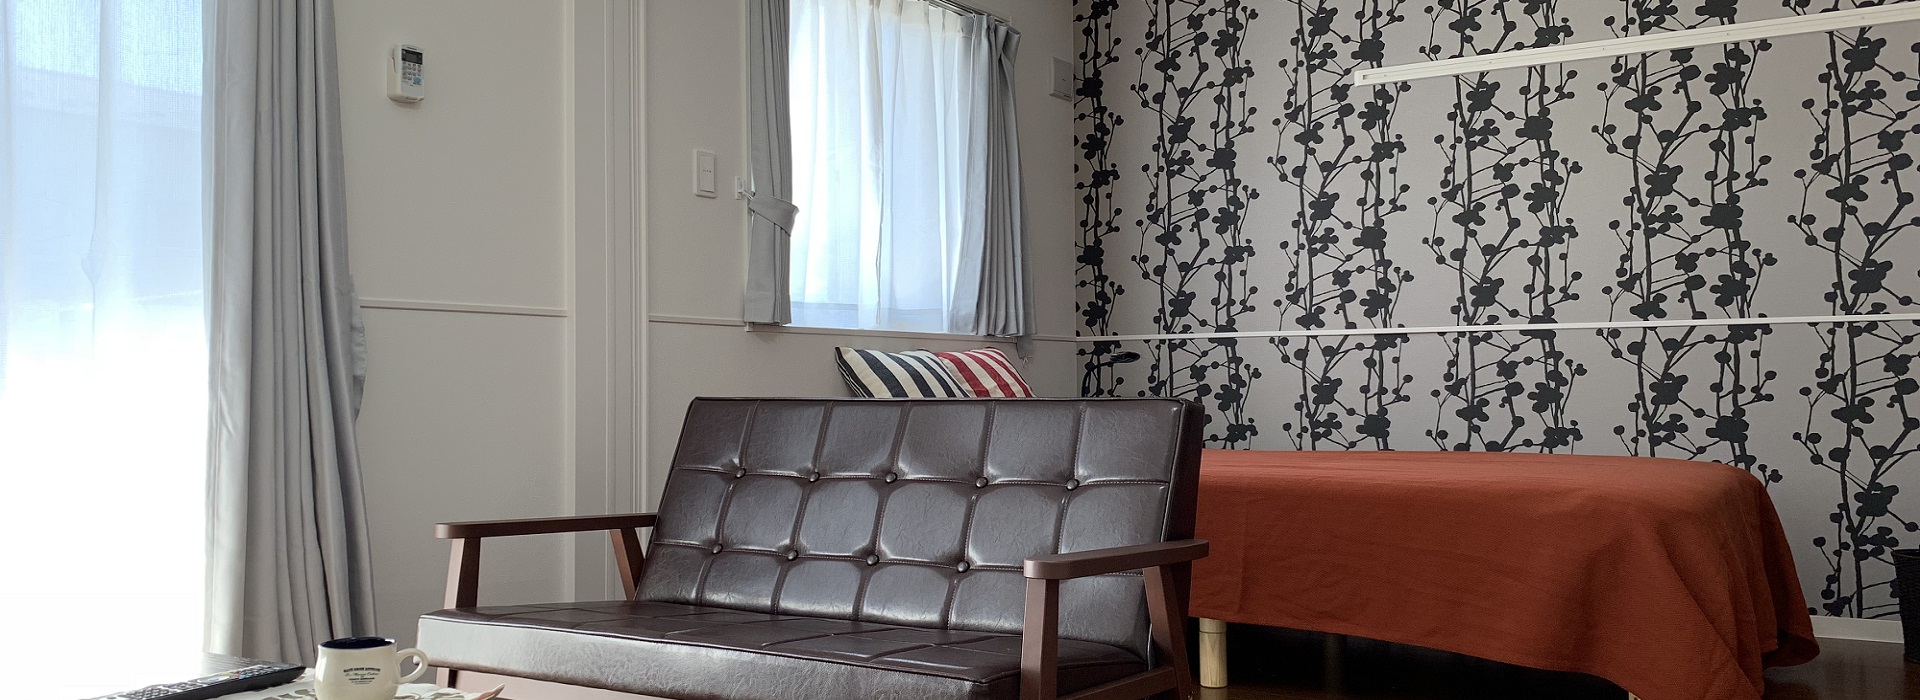 安曇野エリアウィークリー・マンスリー ウィークリー・マンスリー物件は、最短1週間から長期までご利用できる家具付賃貸物件です。